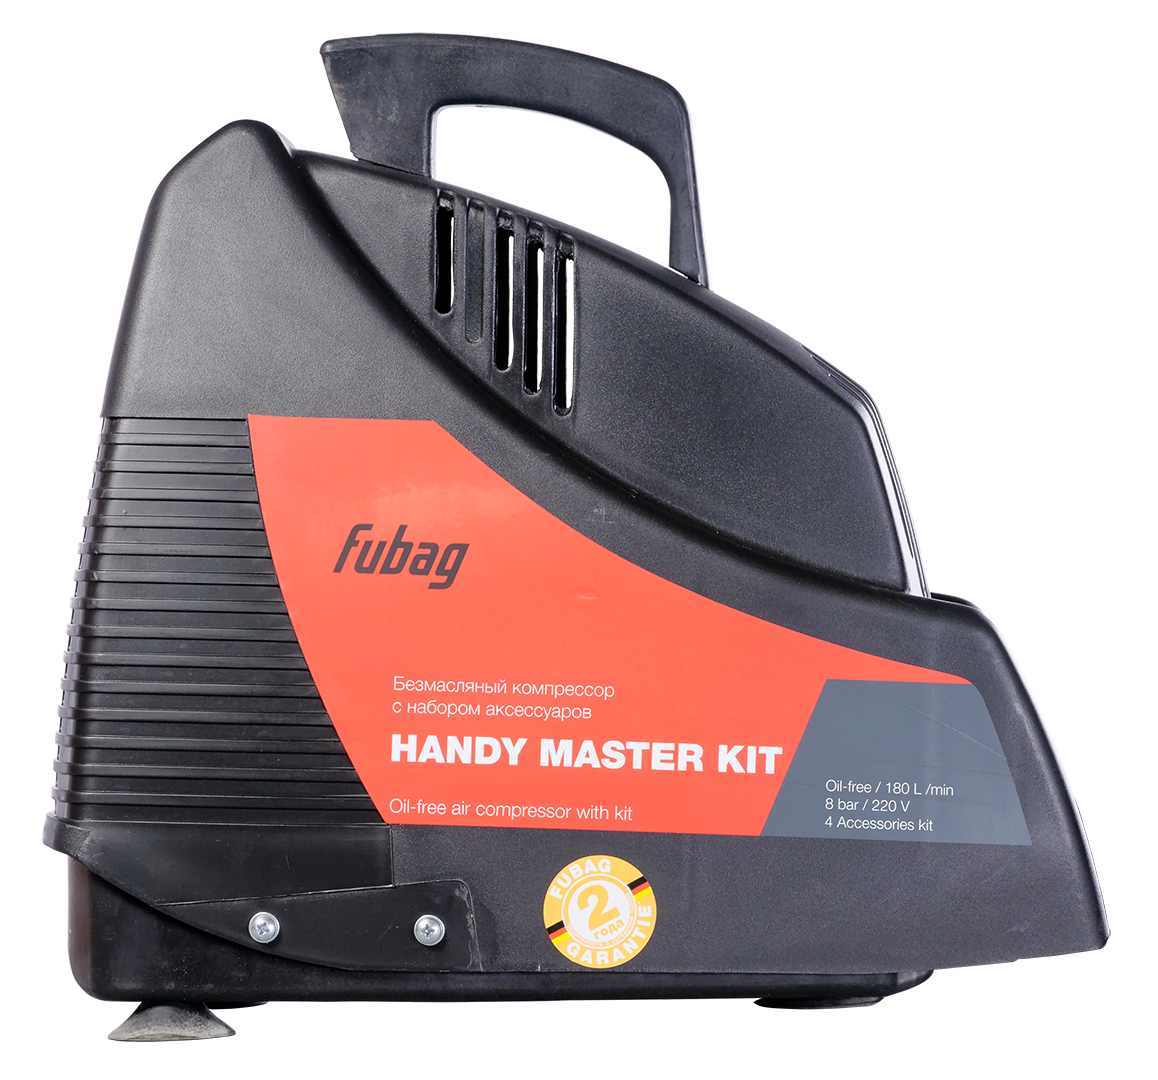 Компрессор Fubag Handy Air ol 195. Компрессор Fubag Handy Master Kit + 5. Компрессор Handy Master Kit + 5 (ol 195+5 предметов). Fubag Handy Master Kit 195.